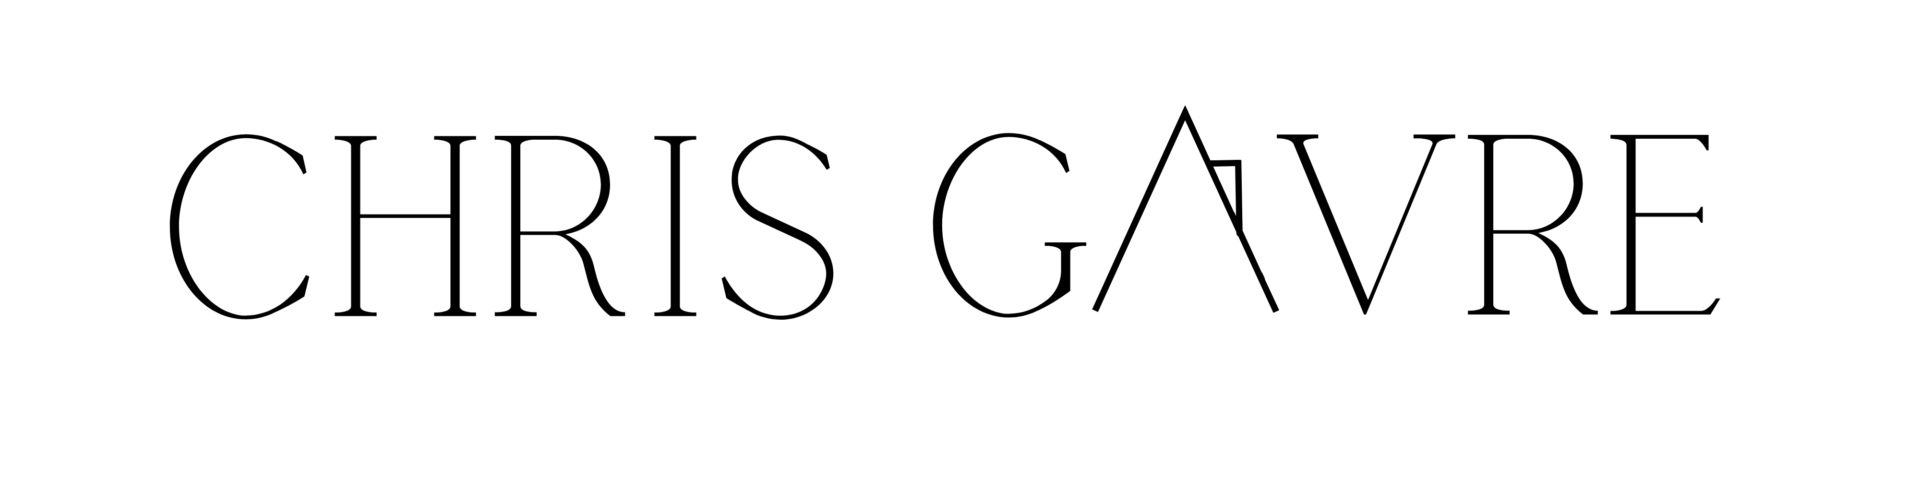 Chris Gavre logo